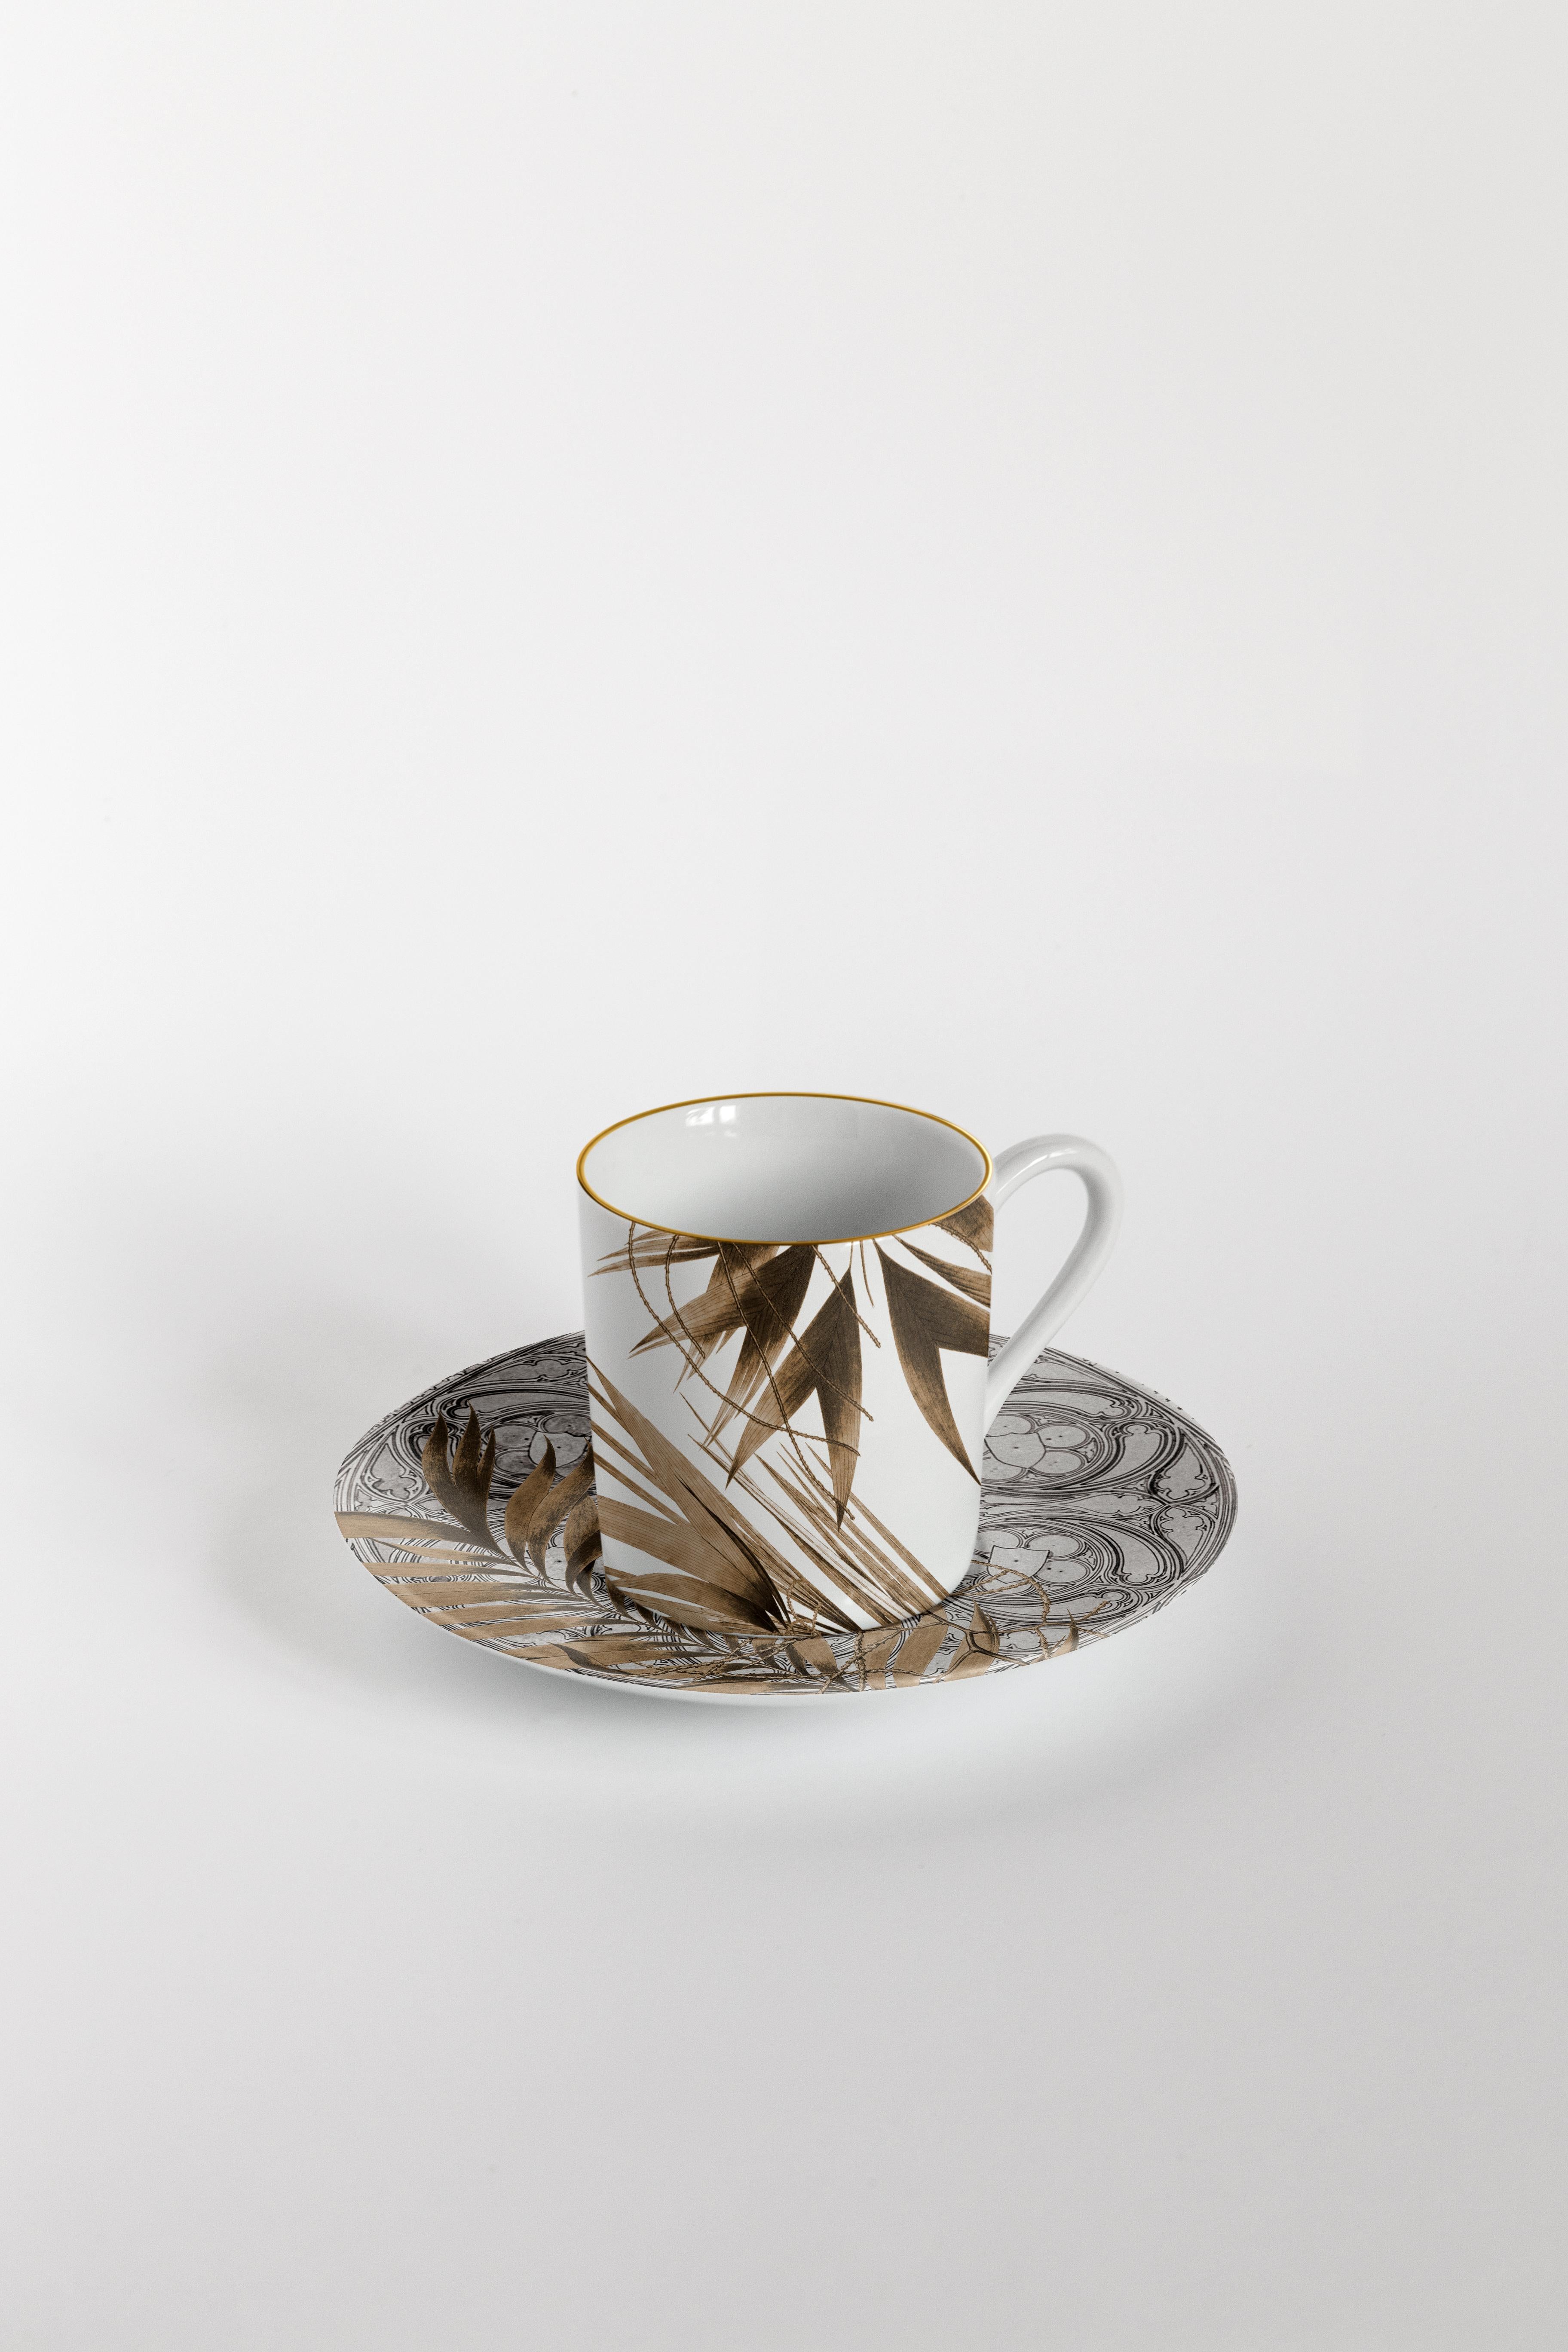 Il Duomo Che Non C'è, Six Contemporary Decorated Coffee Cups with Plates In New Condition For Sale In Milano, Lombardia